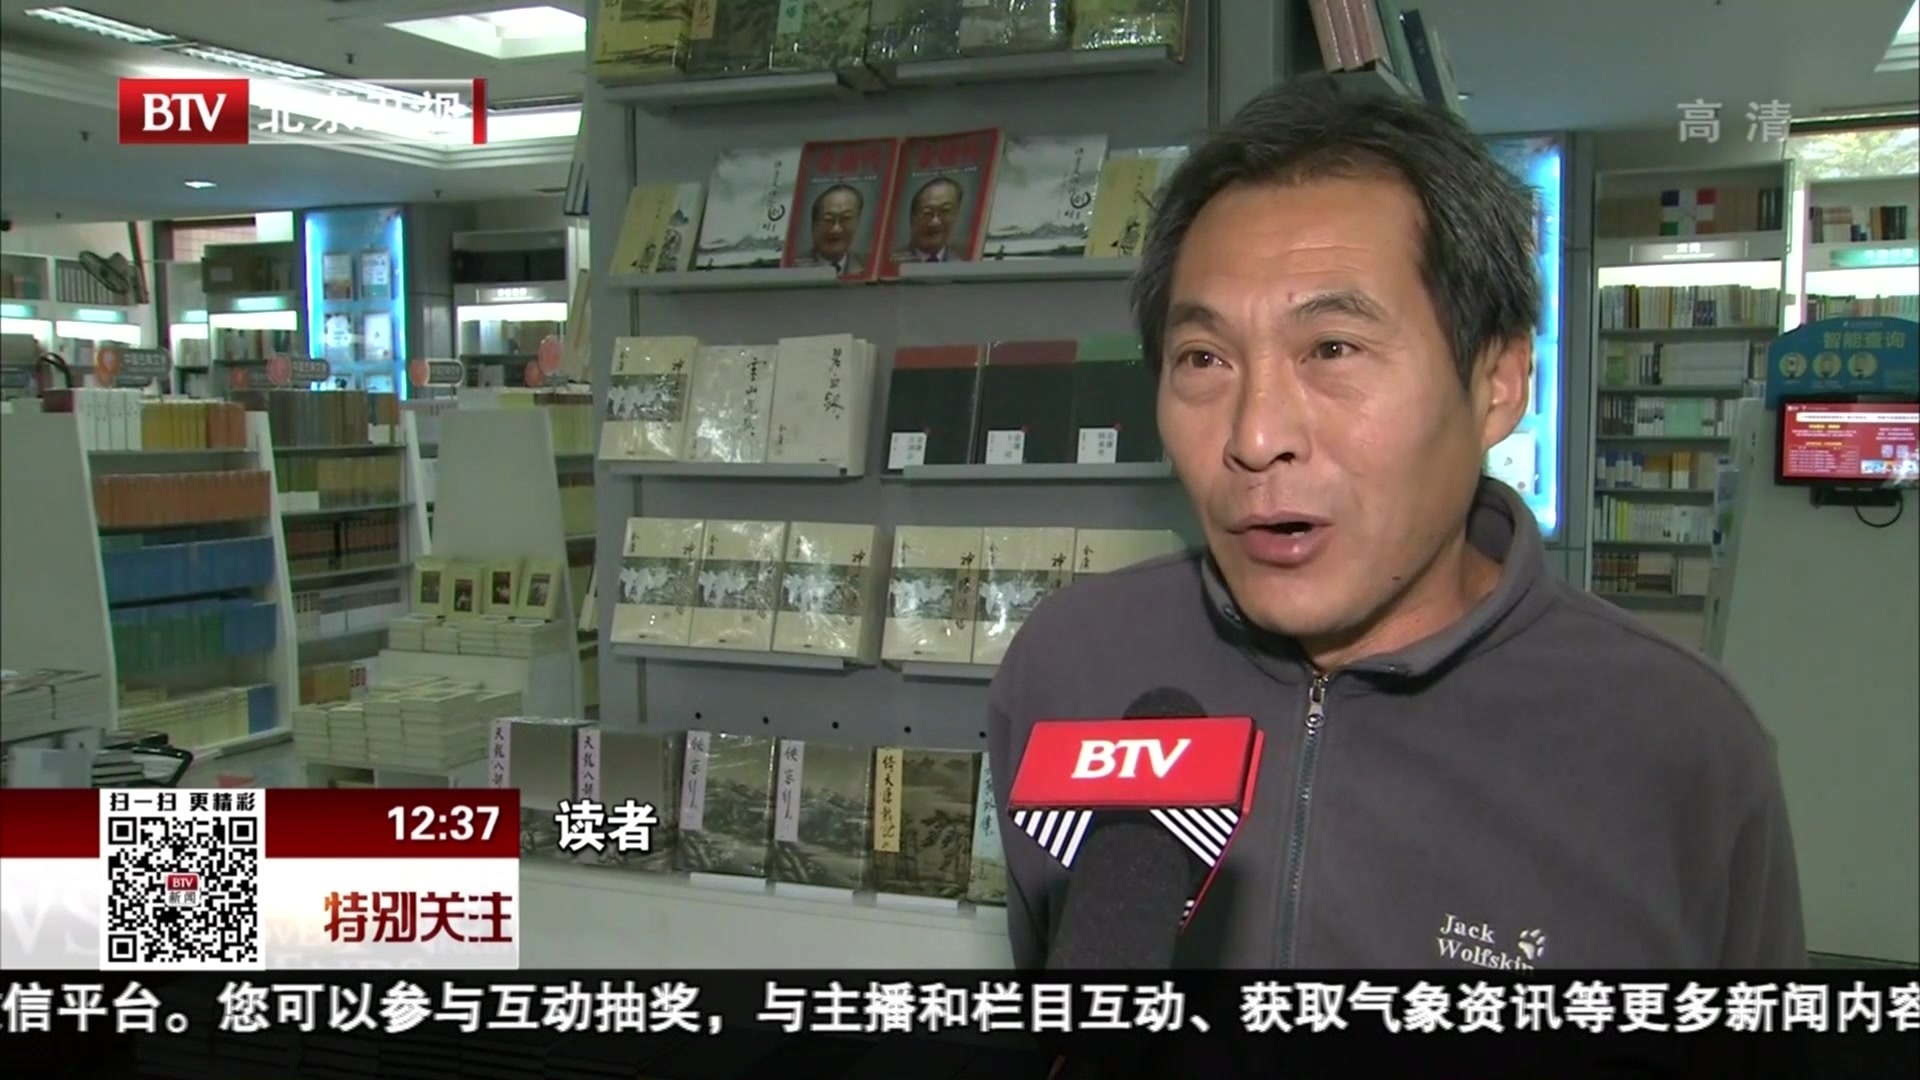 北京图书大厦开设金庸专柜 读者购书缅怀